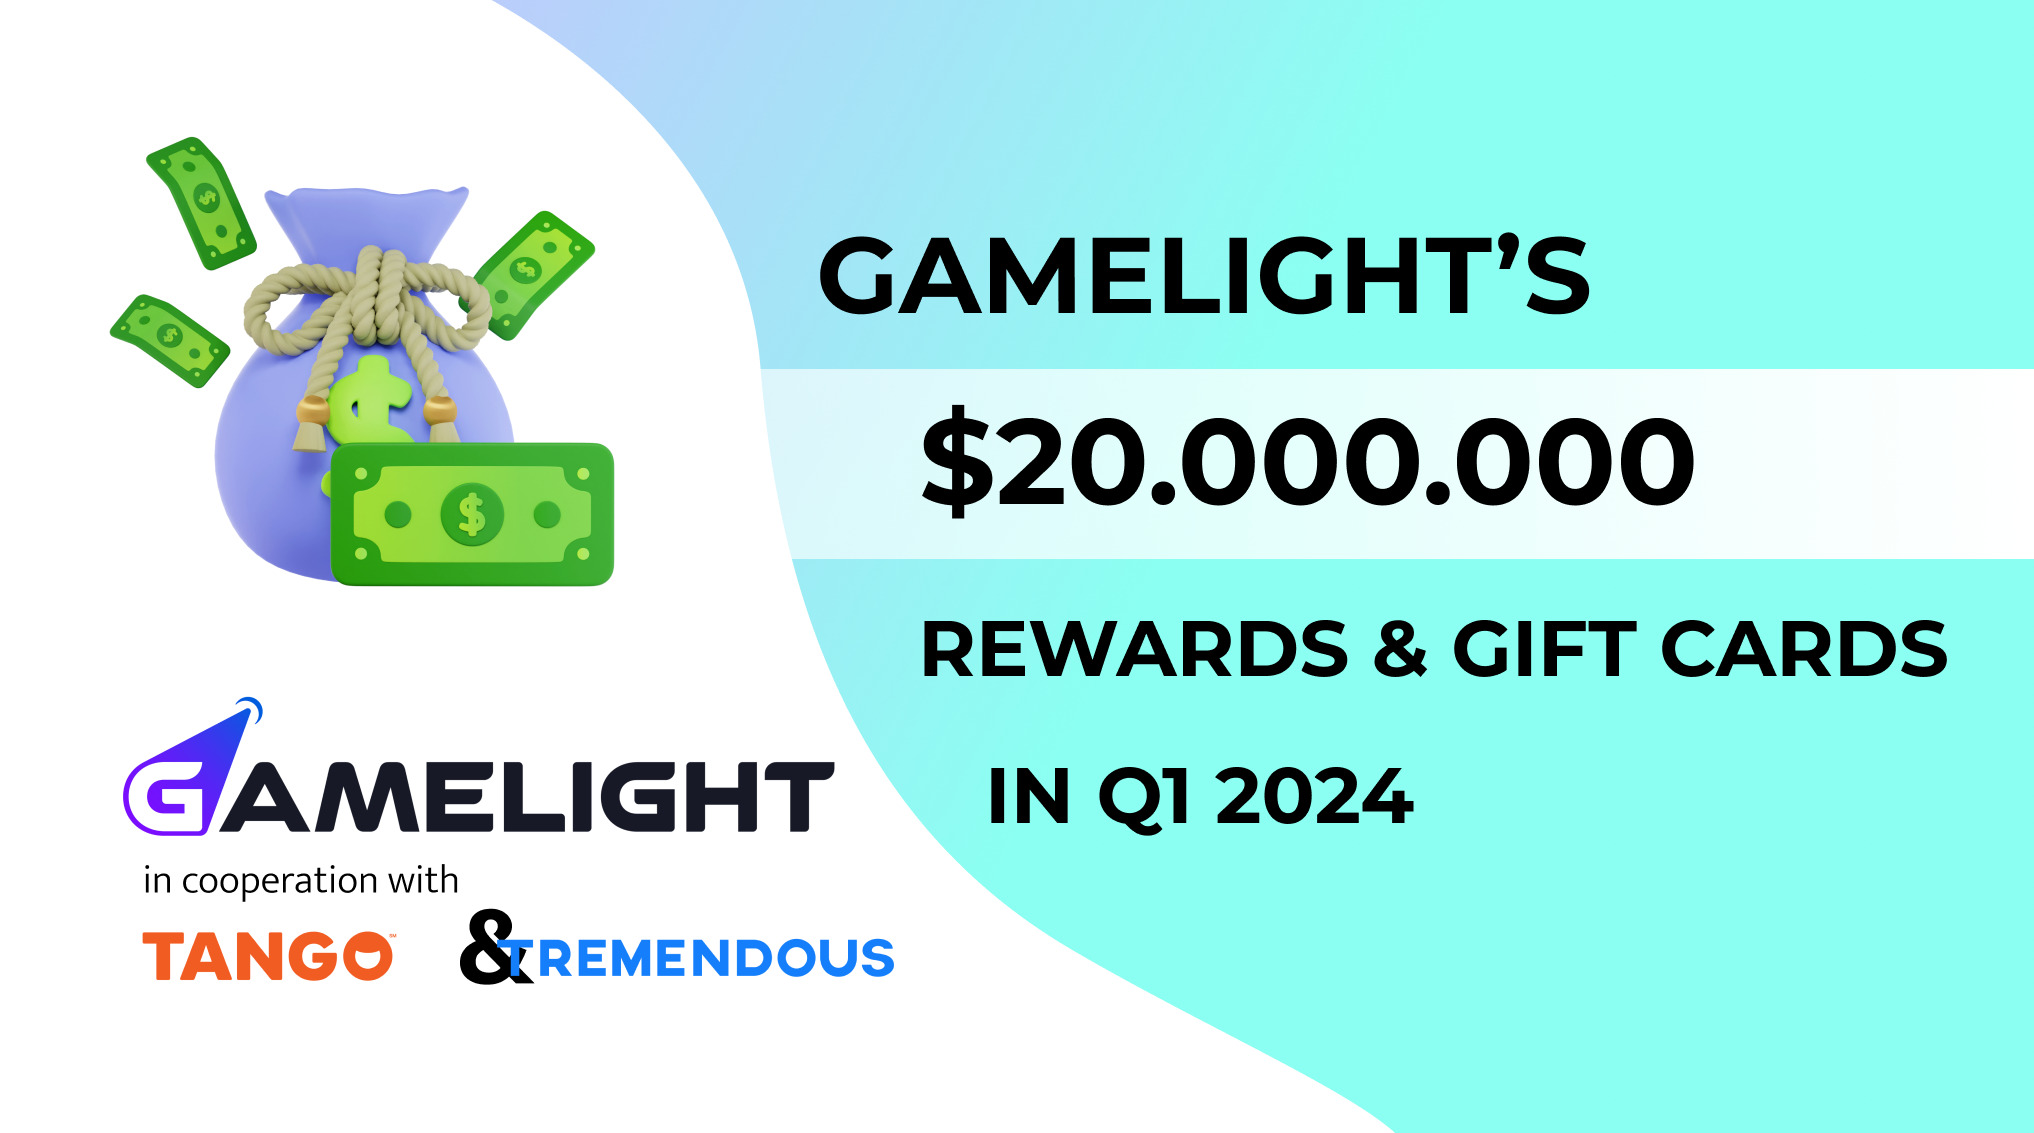 Gamelight уже выплатила своим игрокам вознаграждение в размере 20 миллионов долларов в 2024 году | Спонсор